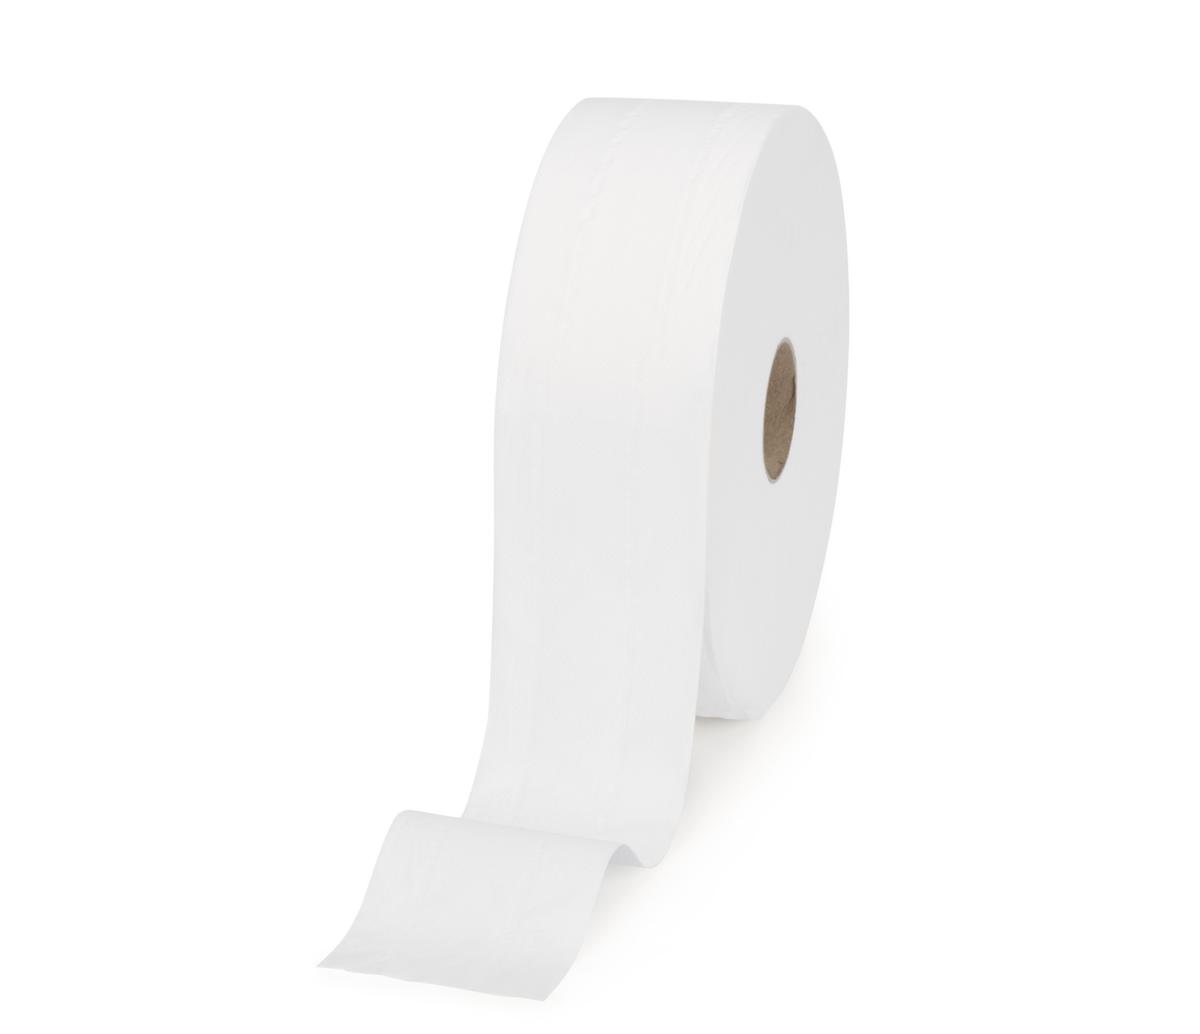 Tork Grands rouleaux de papier toilette, 2 couches, Tissue